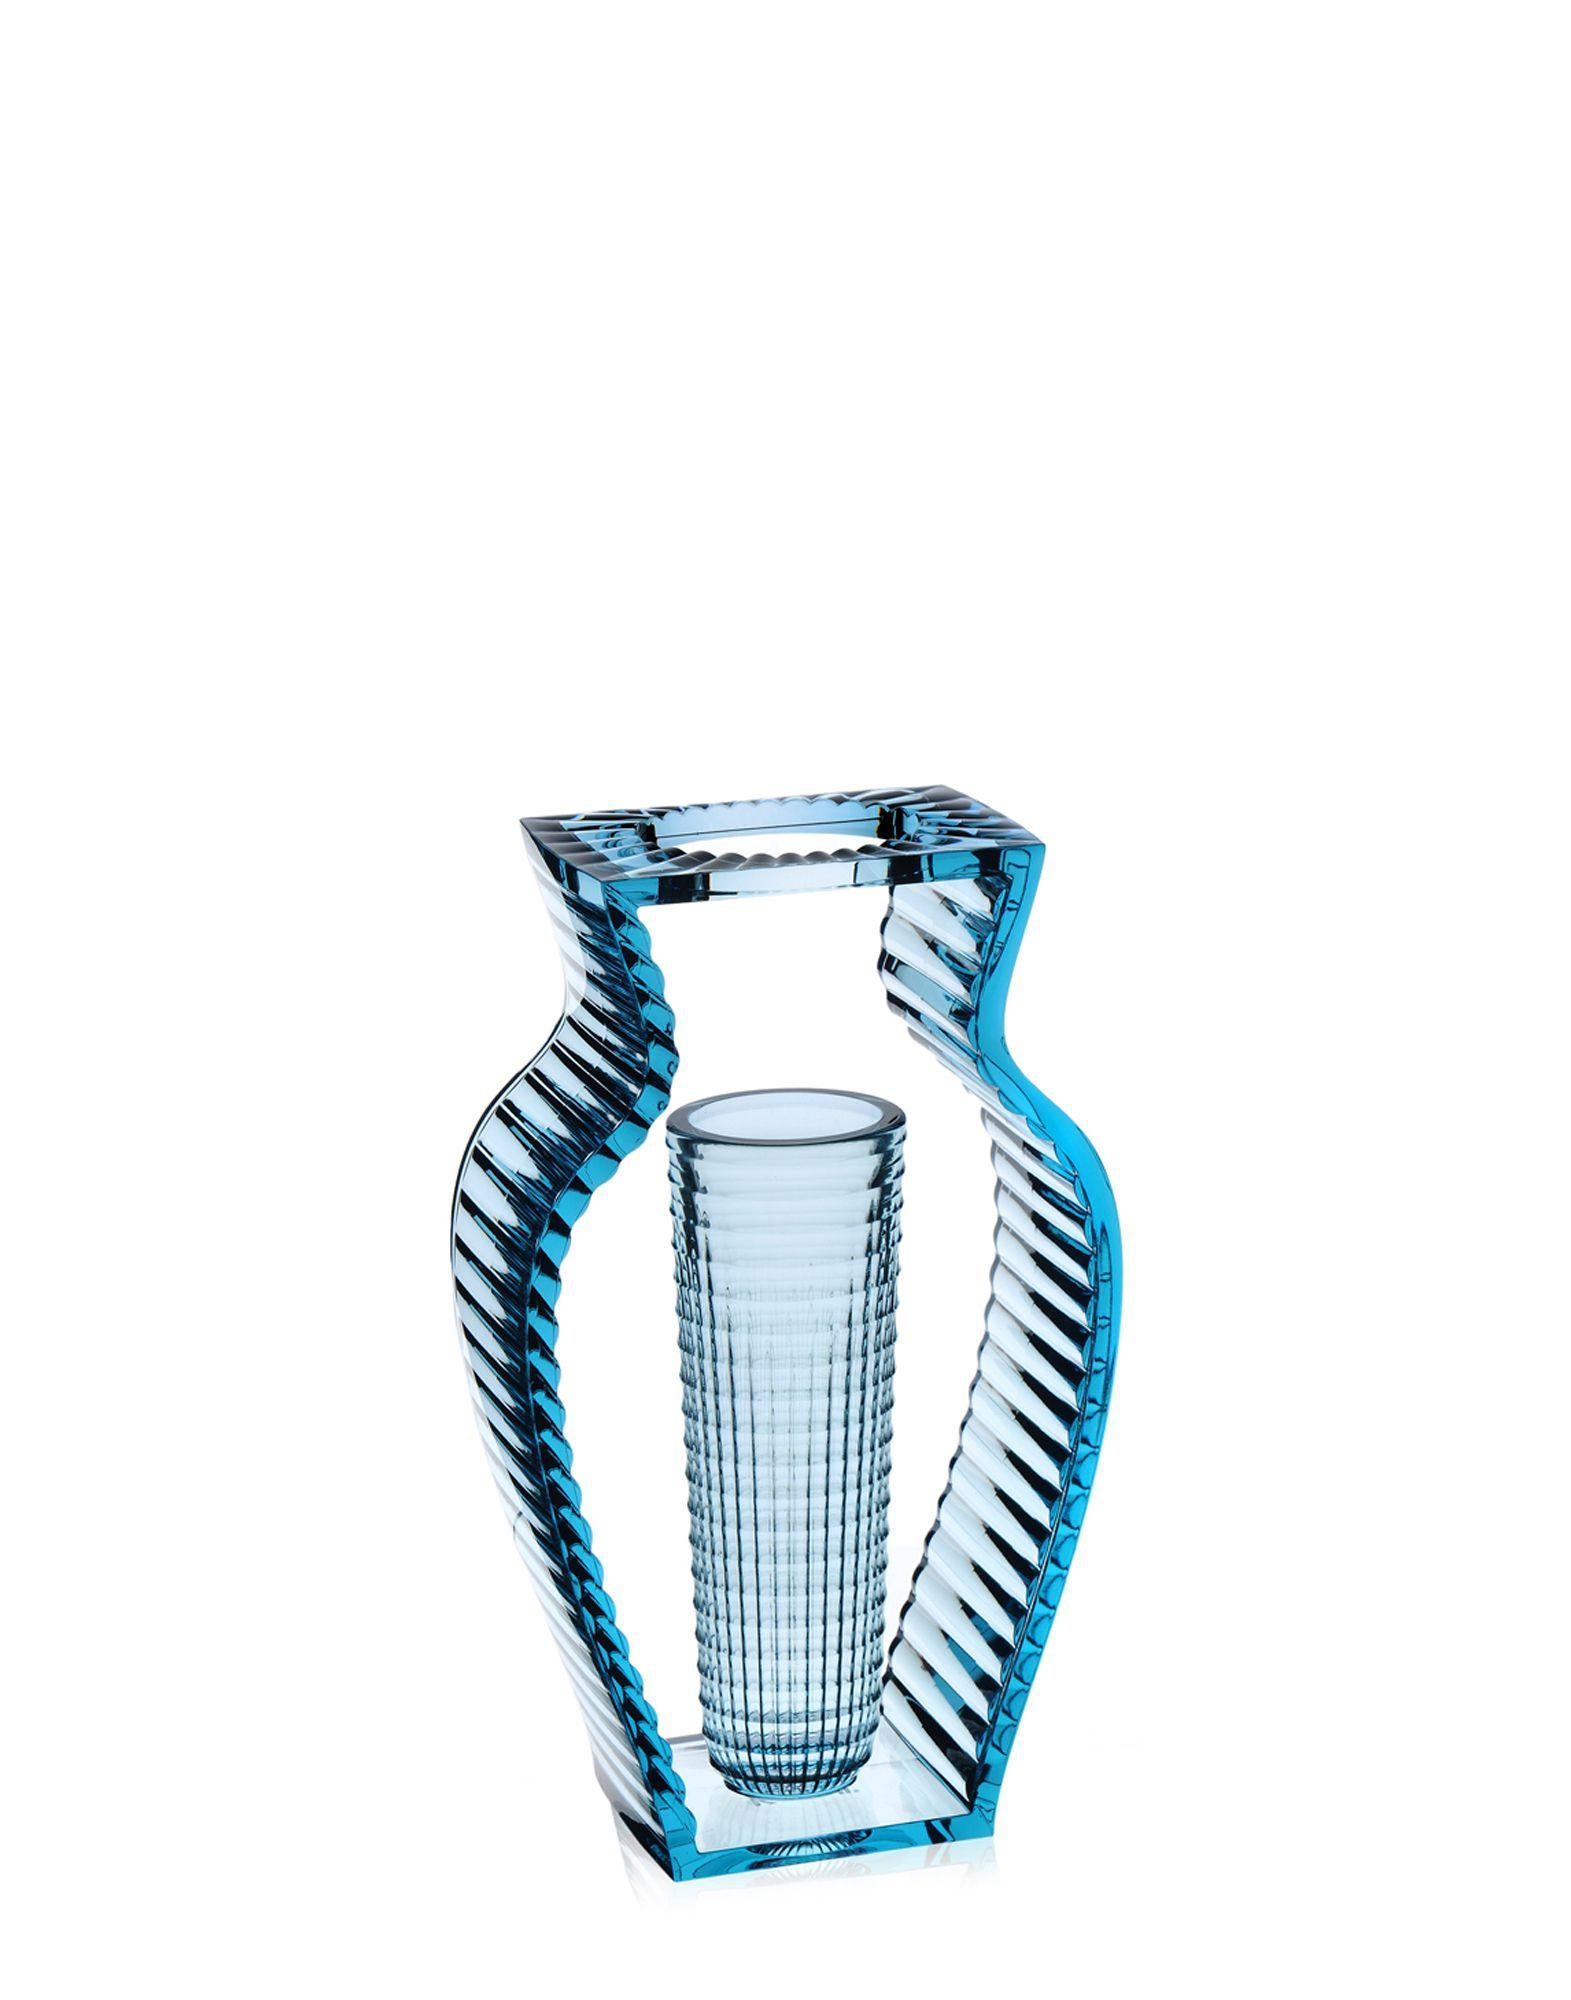 Eugeni Quitllet entwirft eine wertvolle Kollektion von dekorativen Vasen aus transparentem PMMA. Die Linie besteht aus einer Vase und einem Tischaufsatz, die sich durch ihre elegante Geometrie und die Inspiration des Art déco auszeichnen. Die